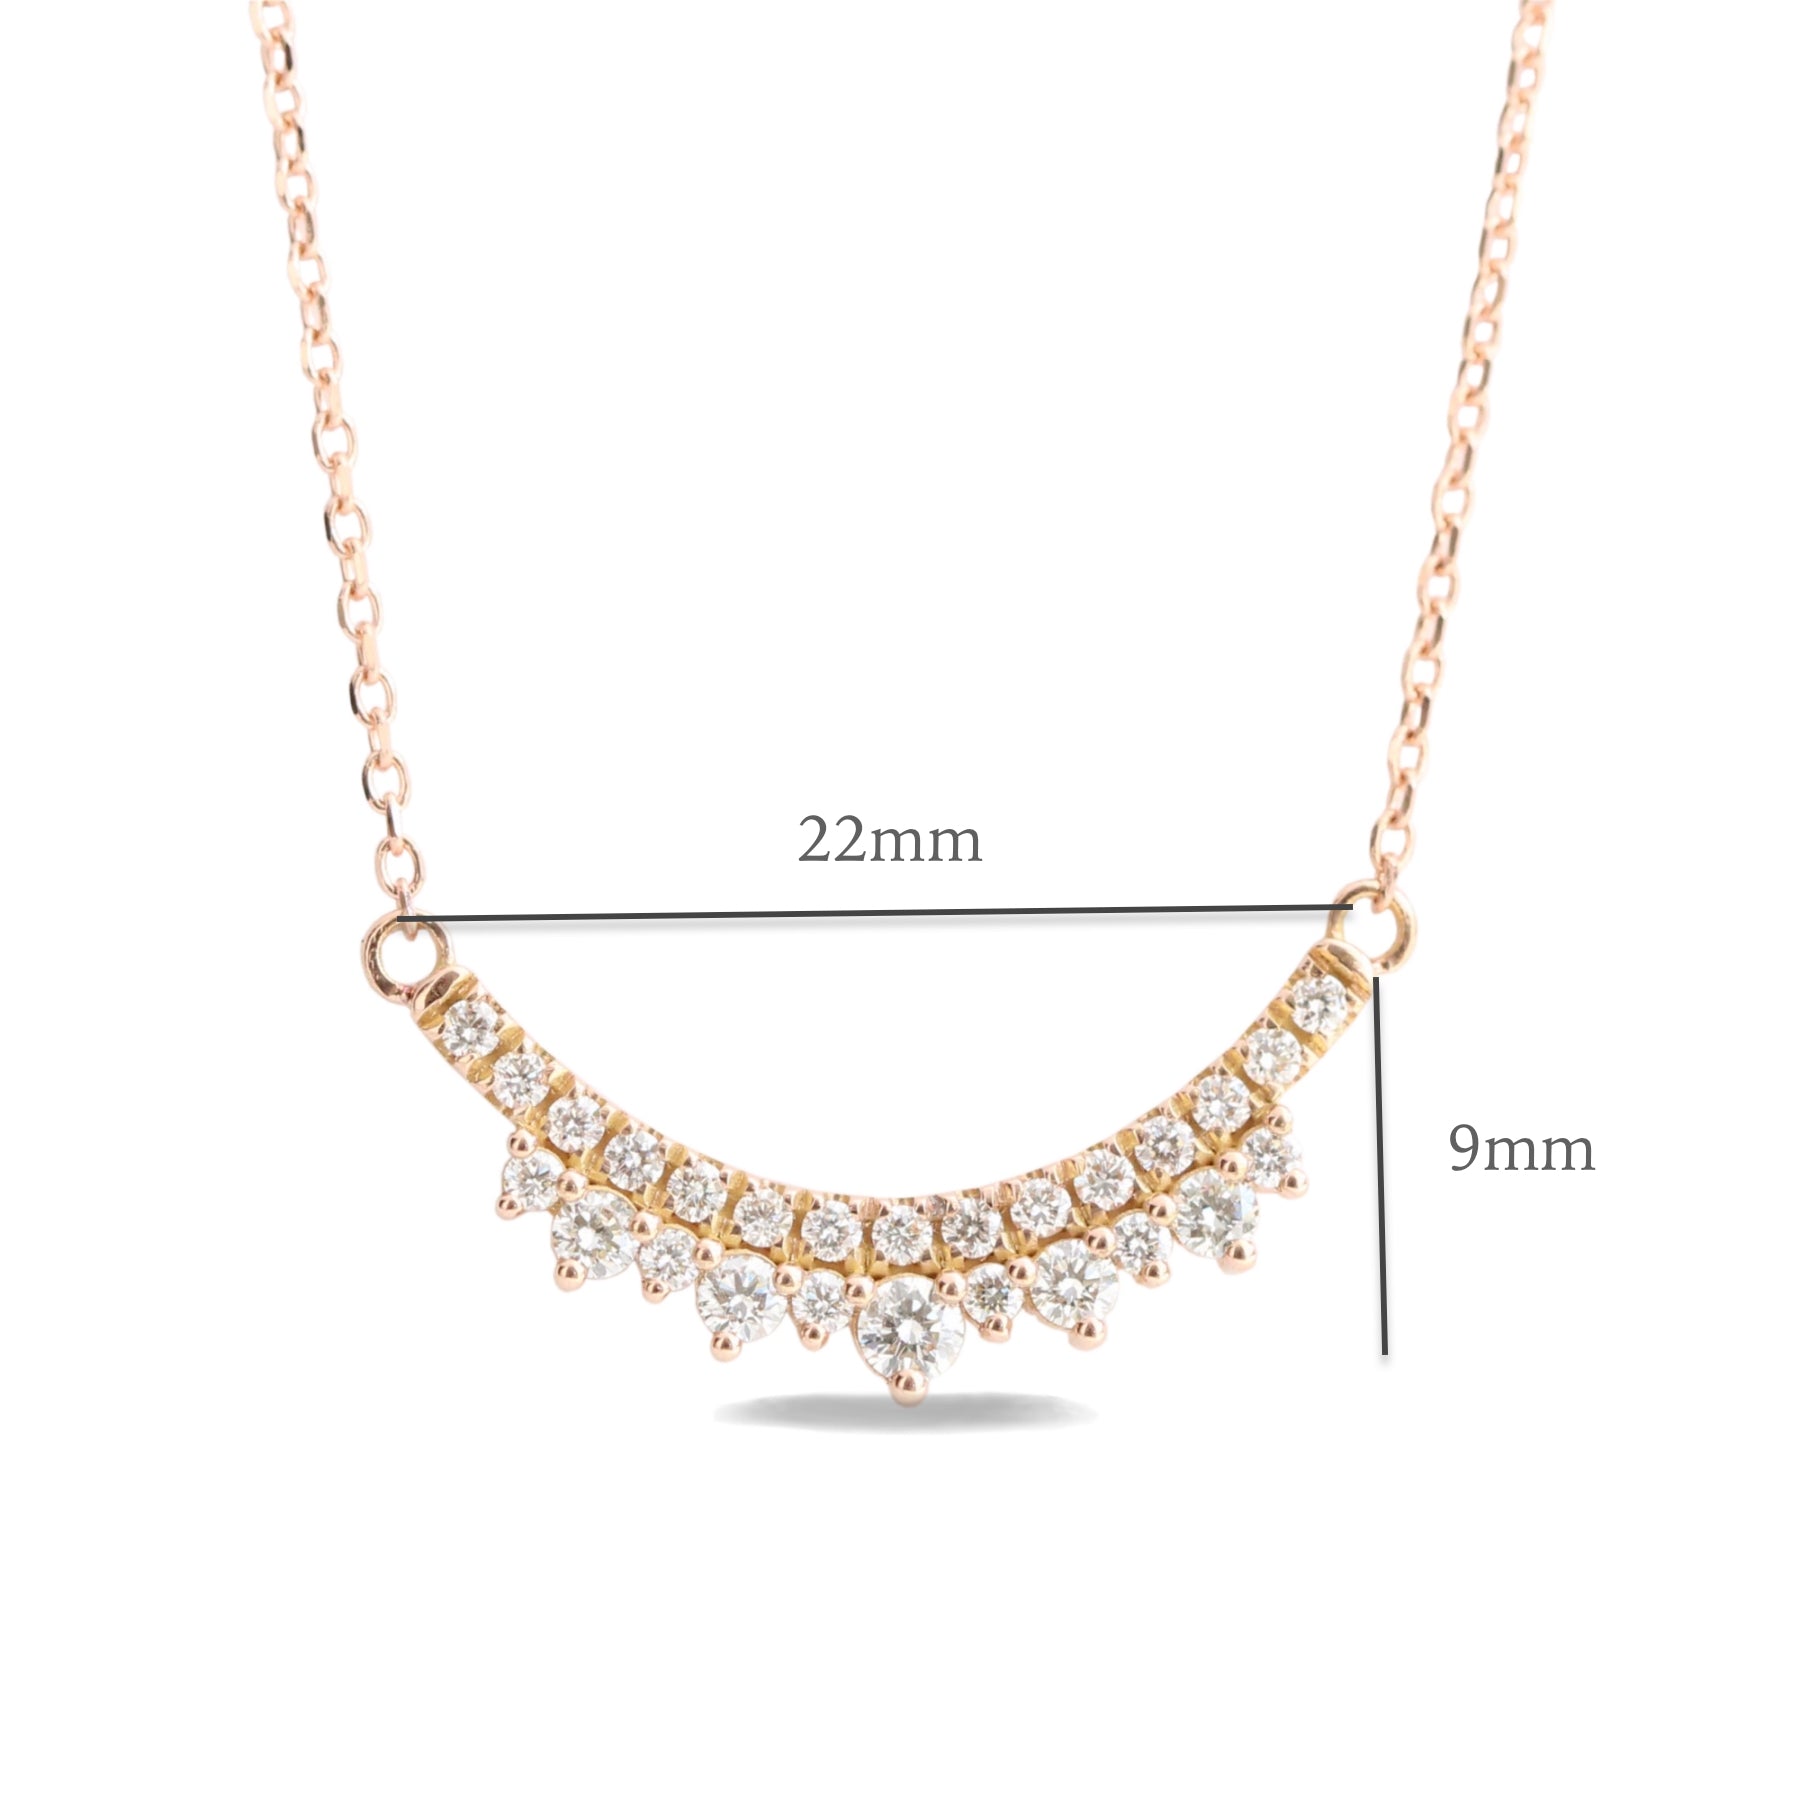 Crown Diamond Pavé Necklace in 14k Gold Drop Pendant Chain